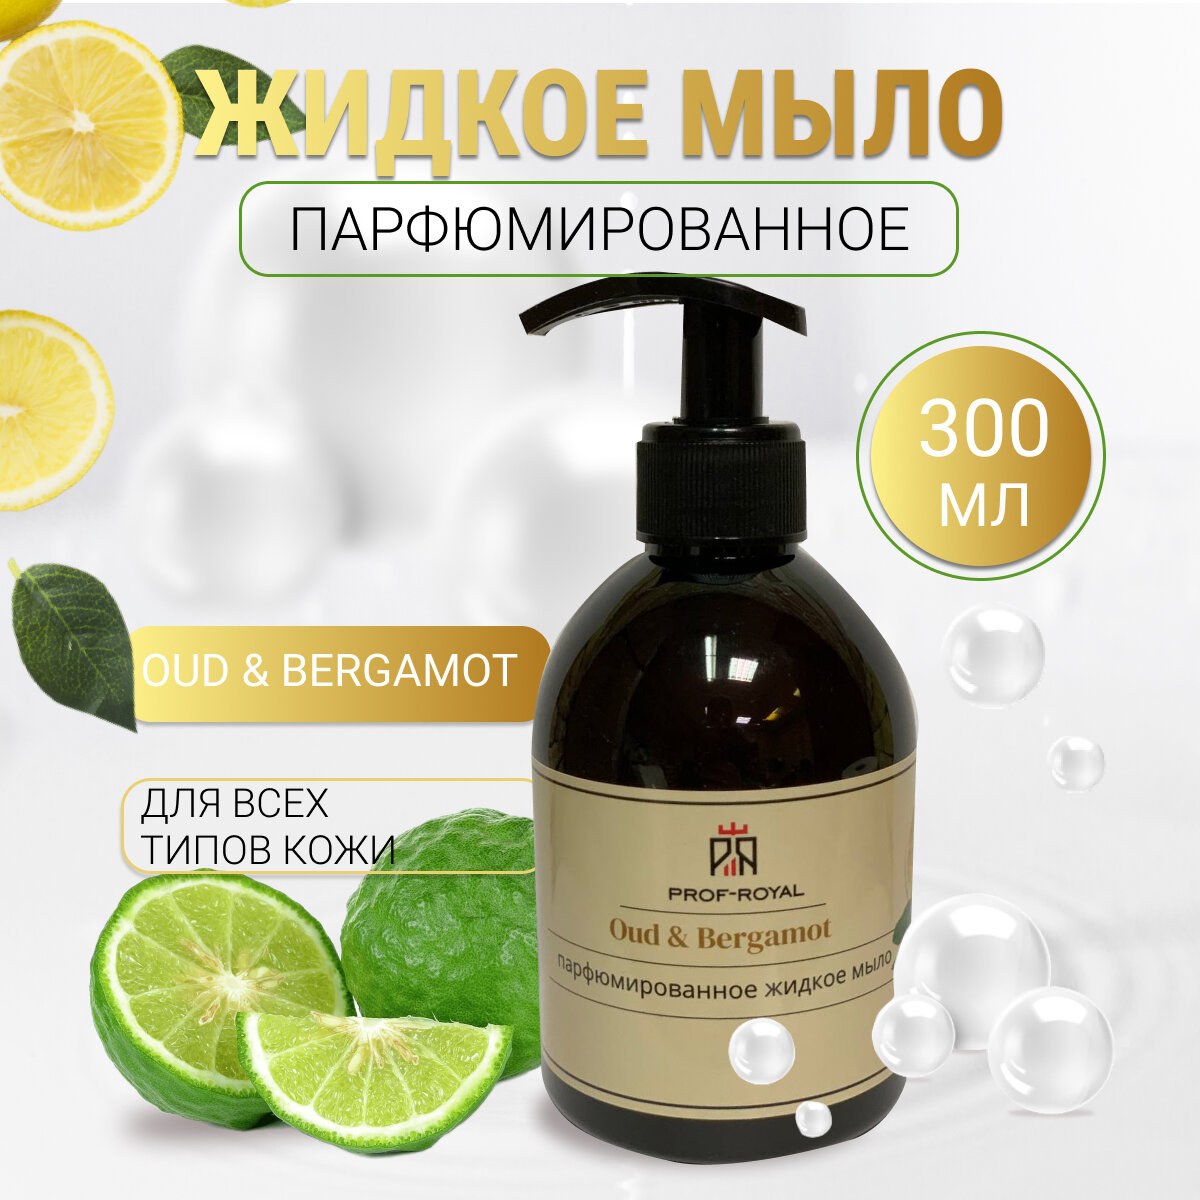 Prof-Royal Жидкое мыло Oud & Bergamot для рук парфюмированное с ароматом Бергамота, лимона и апельсина, 300 мл